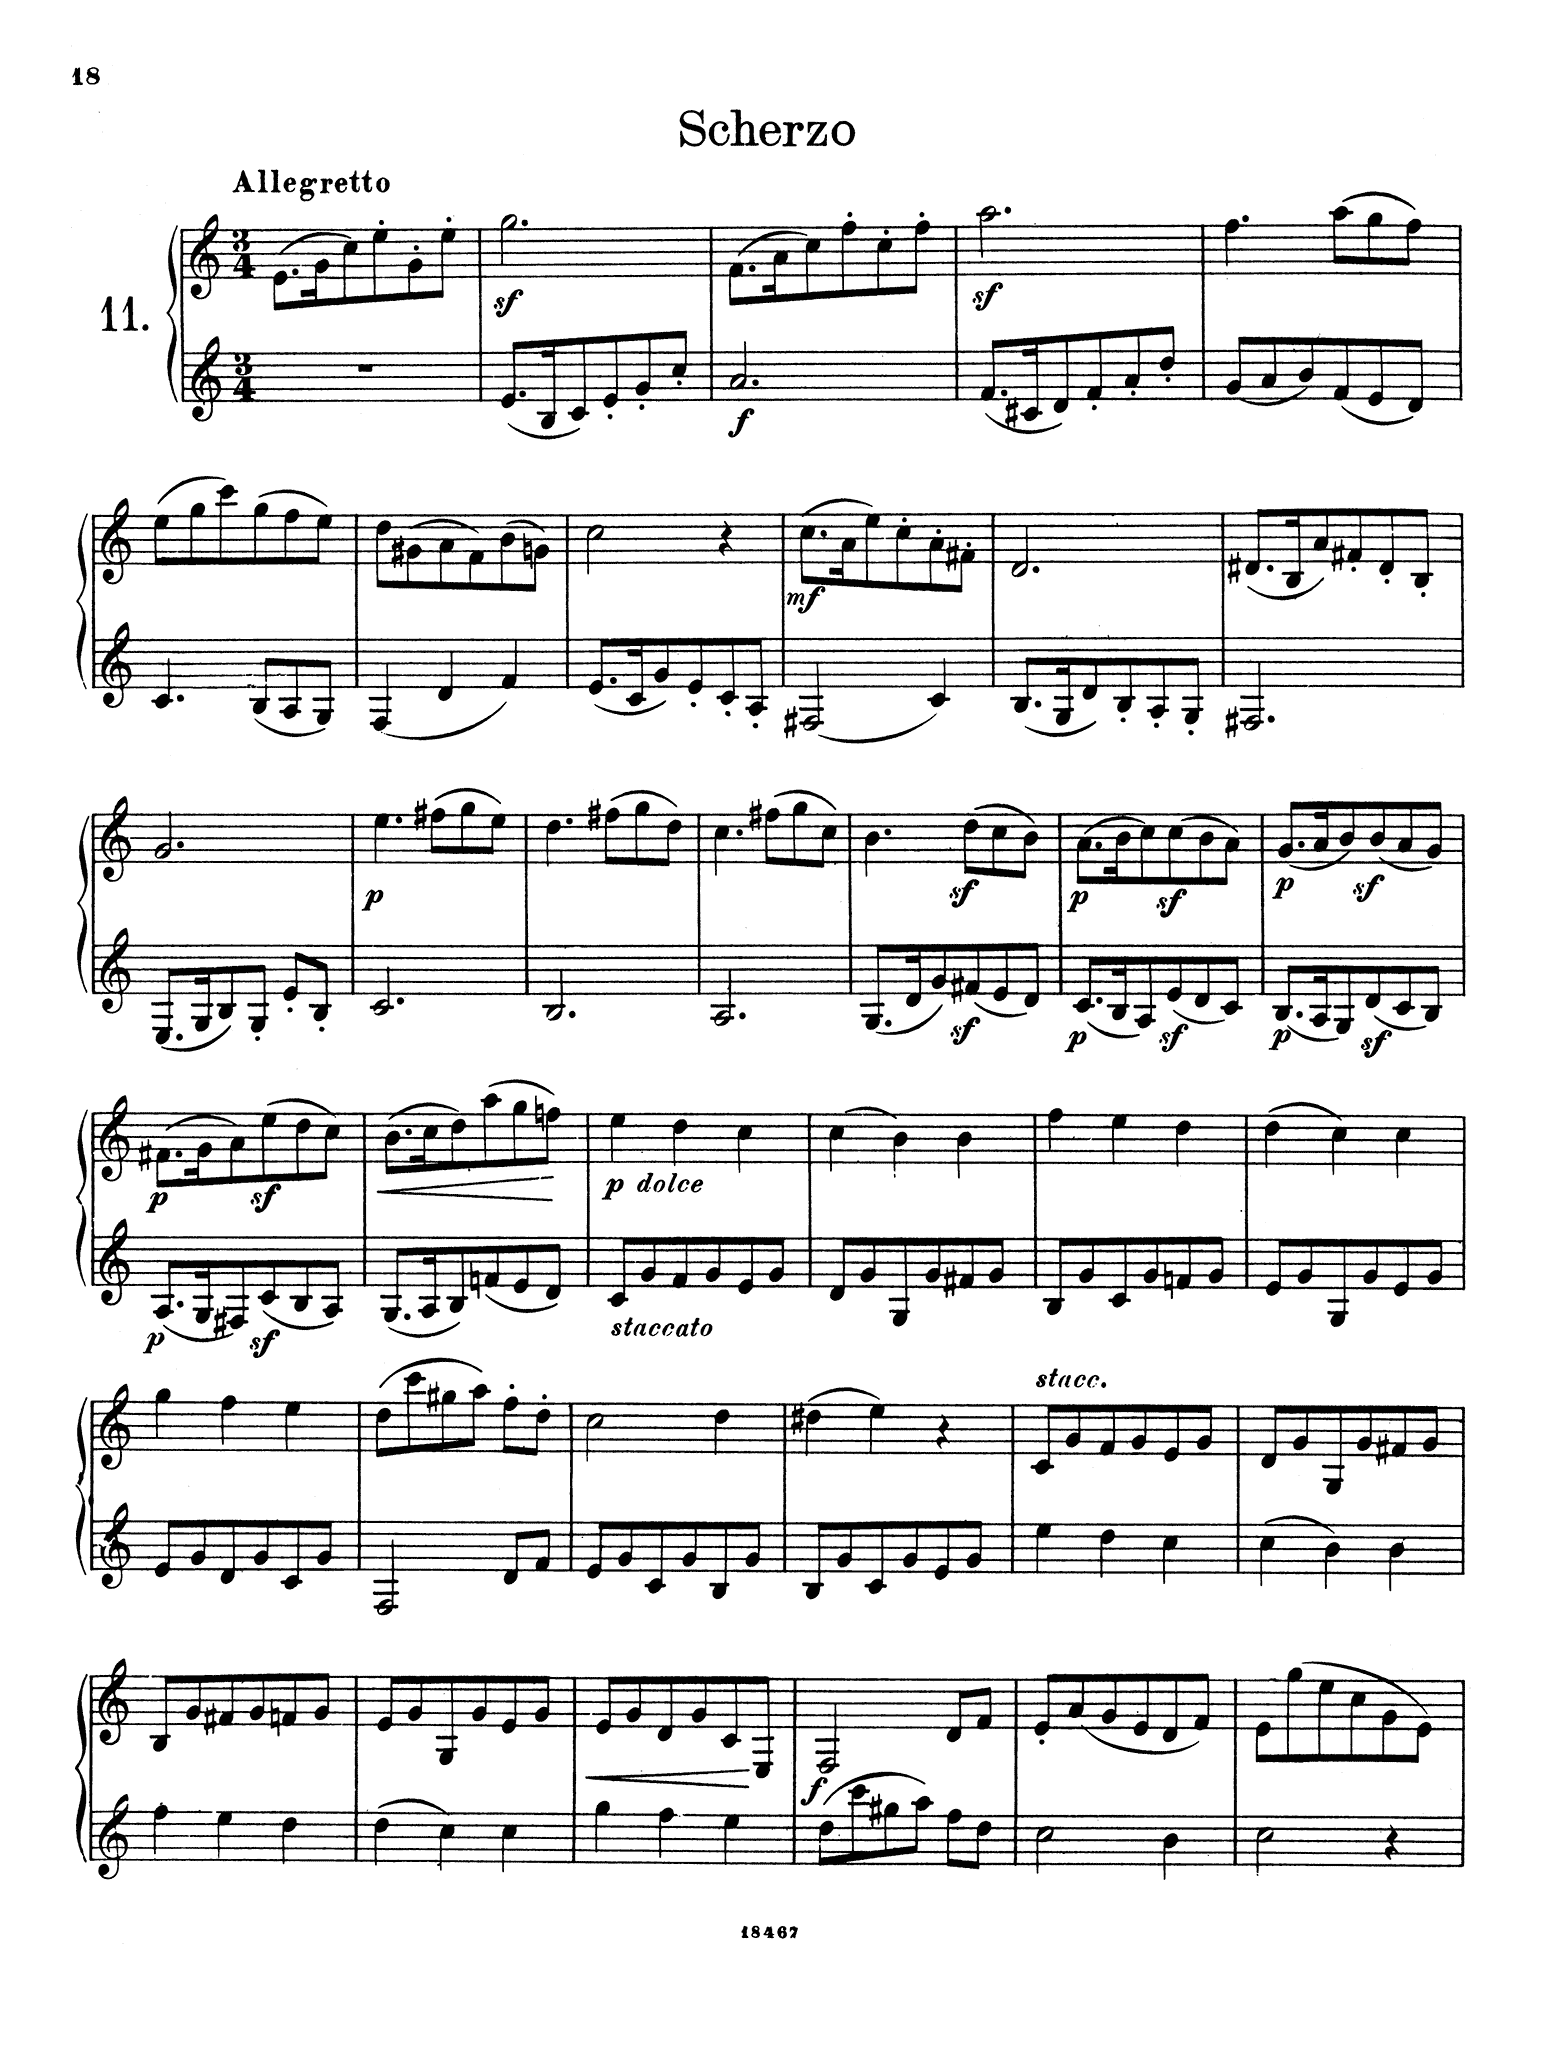 Wiedemann Clarinet Studies, Book 1 page 18